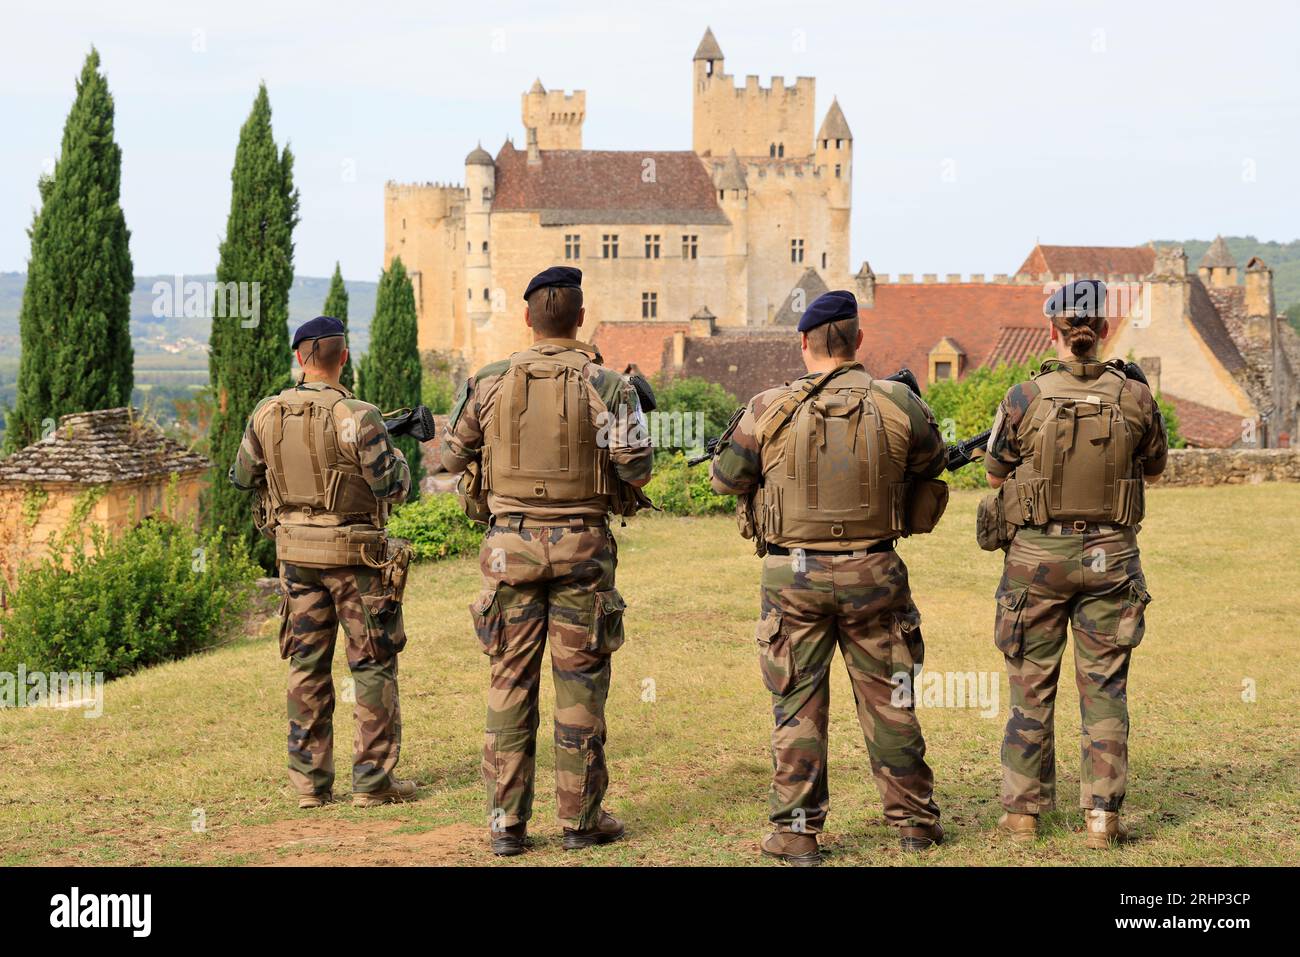 Des soldats de l’« Opération Sentinelle » veillent à la sécurité de sites touristiques du Périgord Noir. ICI près du château fort de Beynac. Le Villag Stockfoto